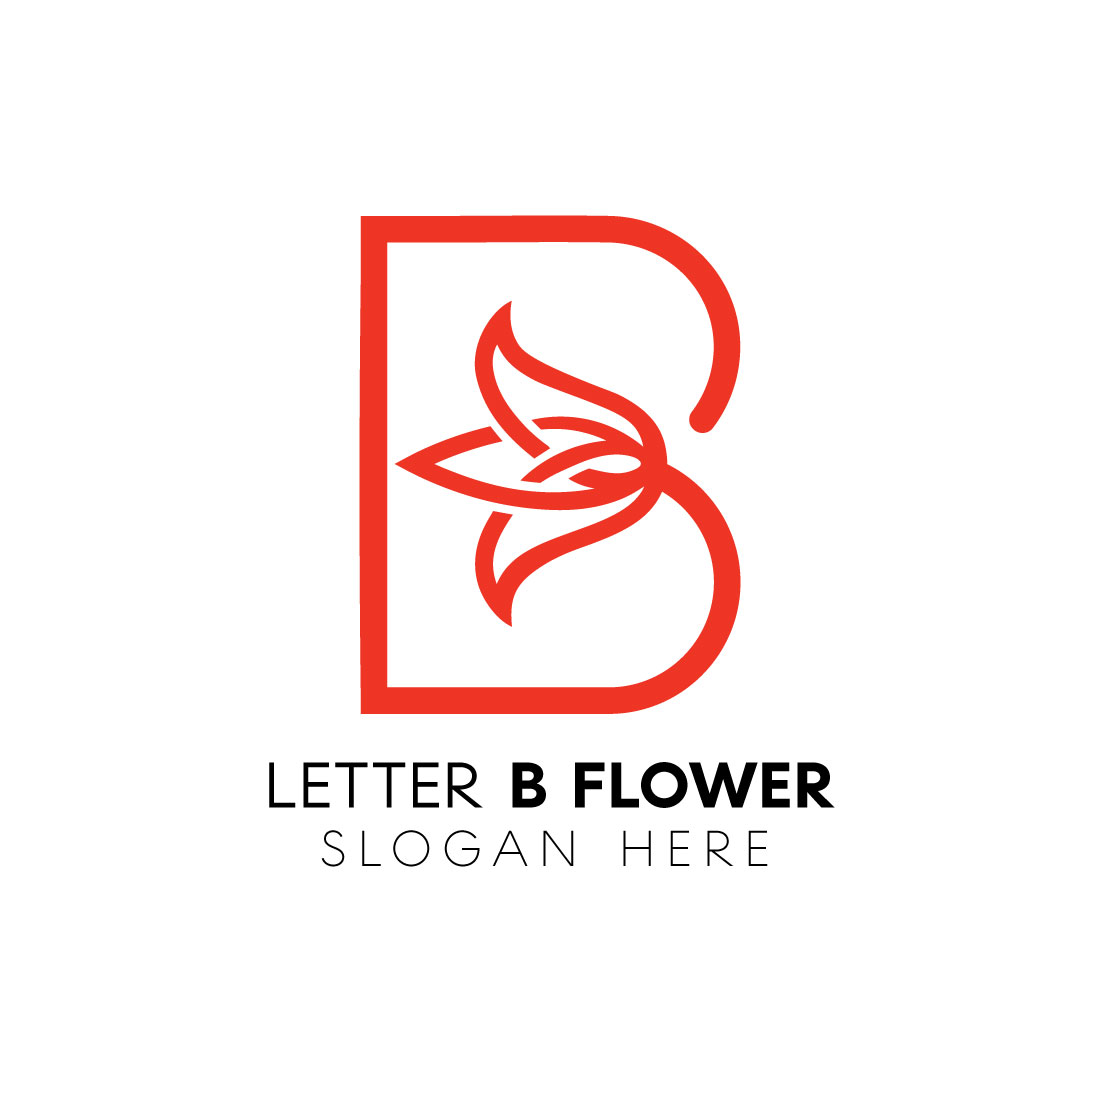 Letter b flower logo preview image.